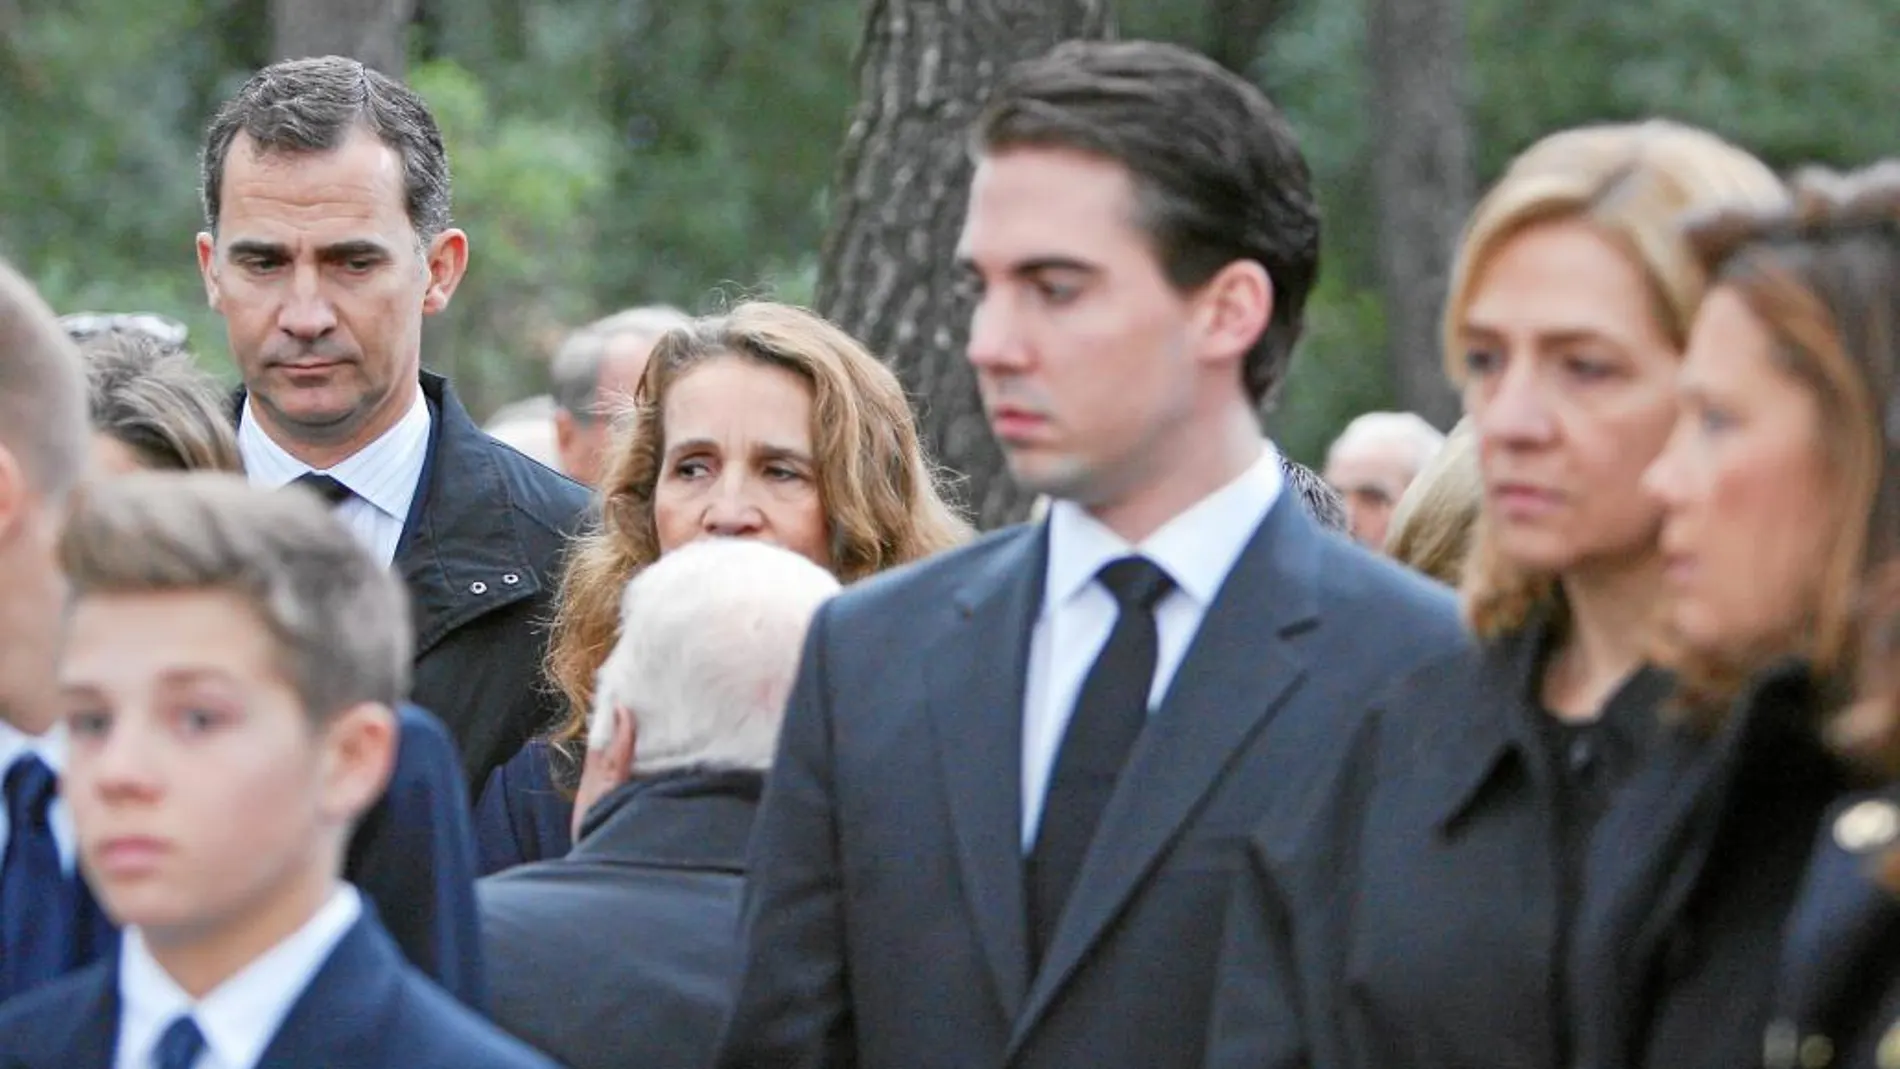 En marzo de 2014, la Reina Sofía y el entonces Príncipe de Asturias rindieron homenaje al rey Pablo I en un acto religioso celebrado en el cementerio real del palacio de Tatoi.